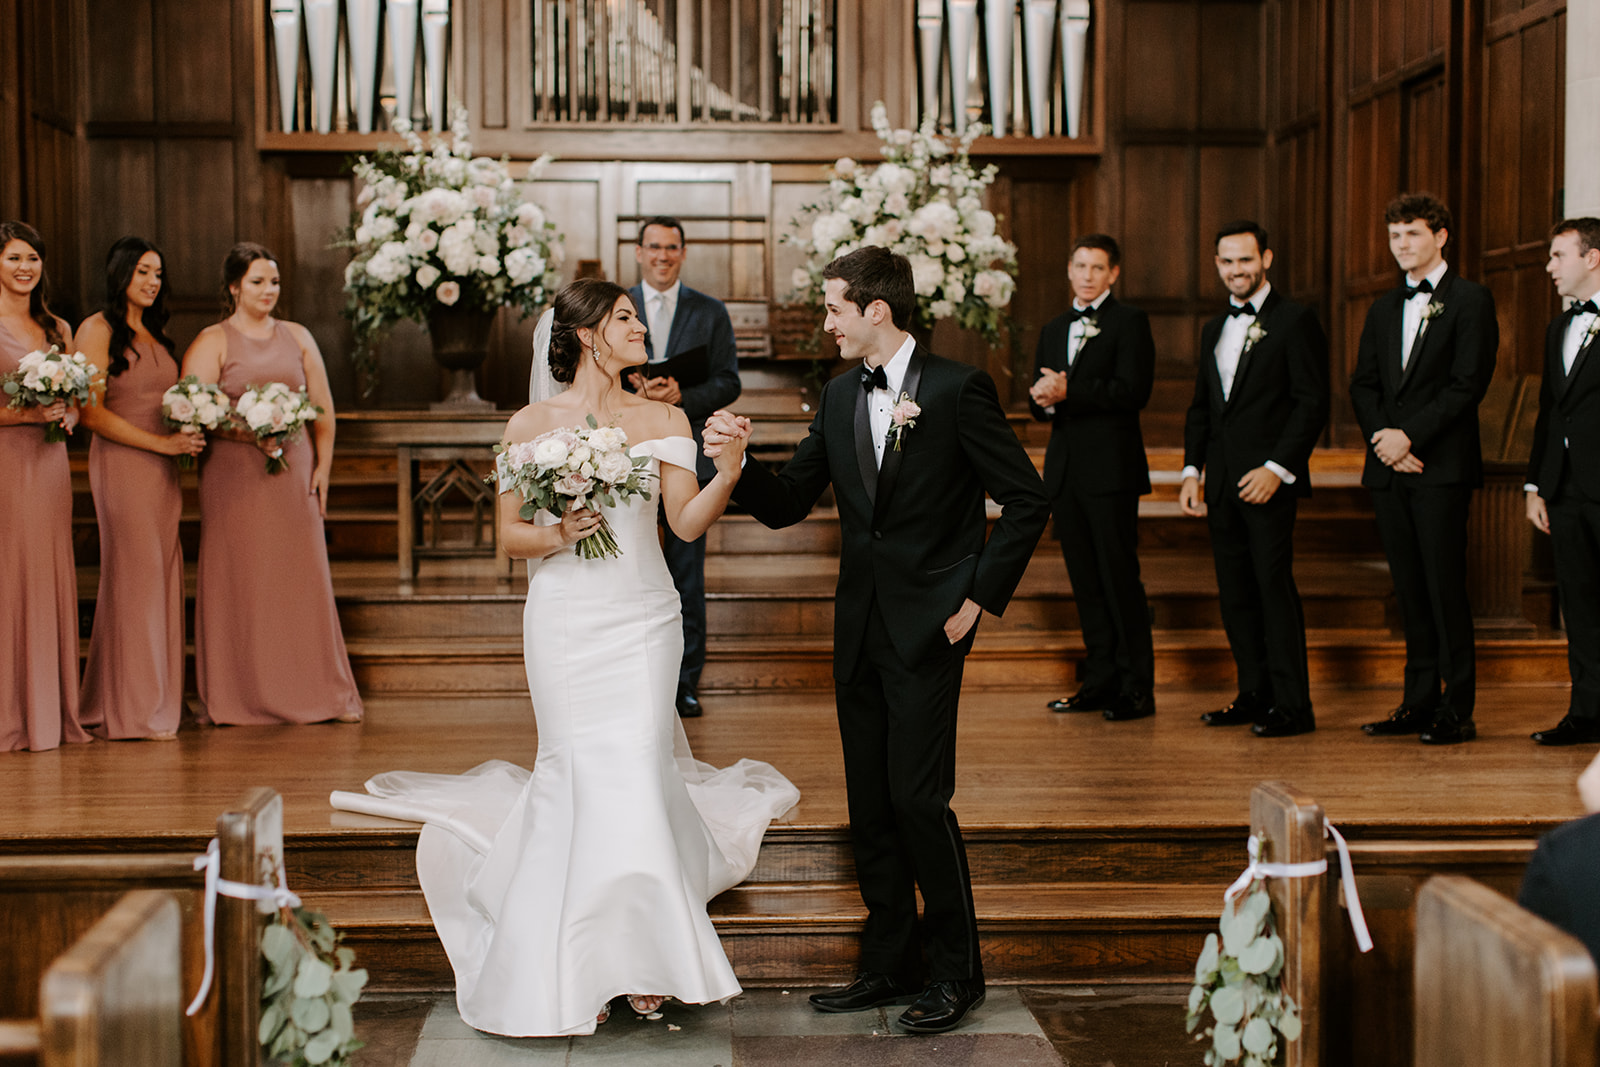 Documentary photo of couple celebrating their ceremony at Scarritt Bennett Skinner Chapel in Nashville, Tennessee